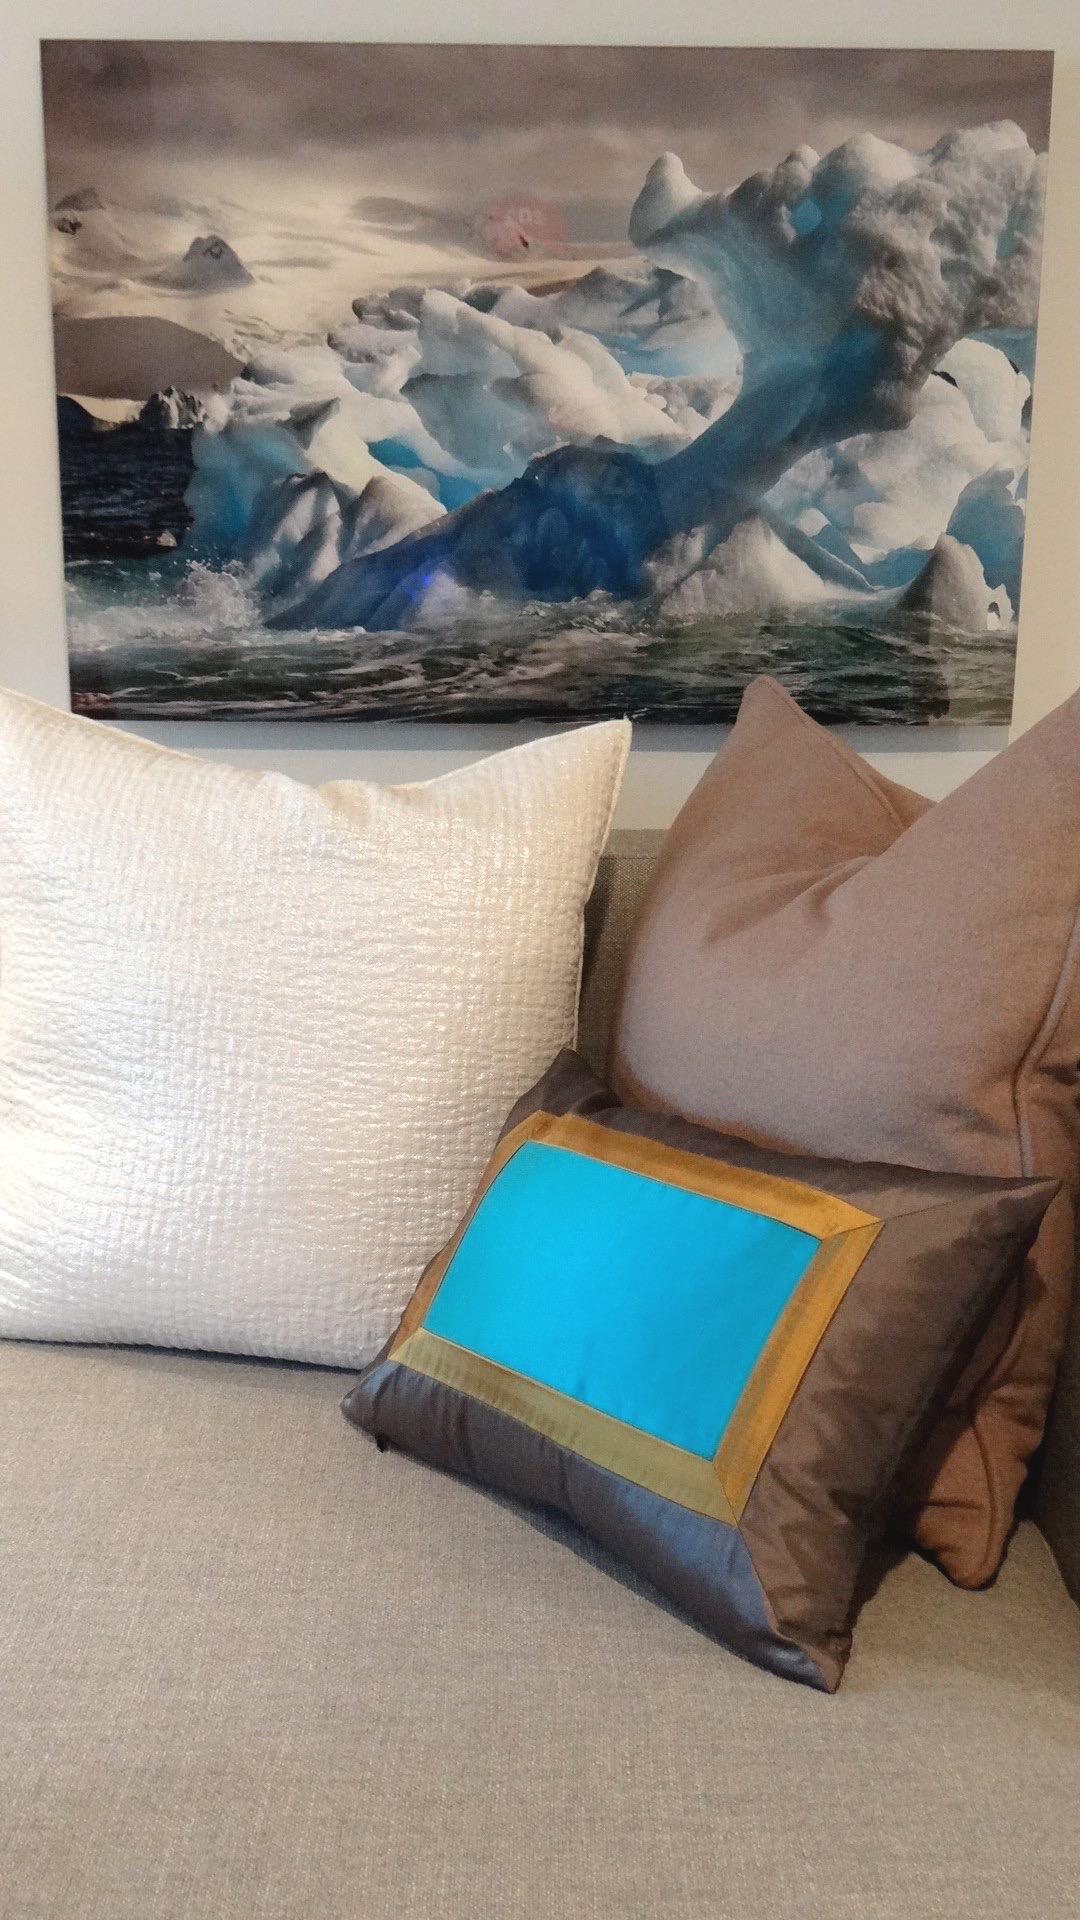 Antarctica #26, Iceberg, Fotografie in limitierter Auflage, Blau, Reisen, ungerahmt (Amerikanischer Realismus), Photograph, von John Conn